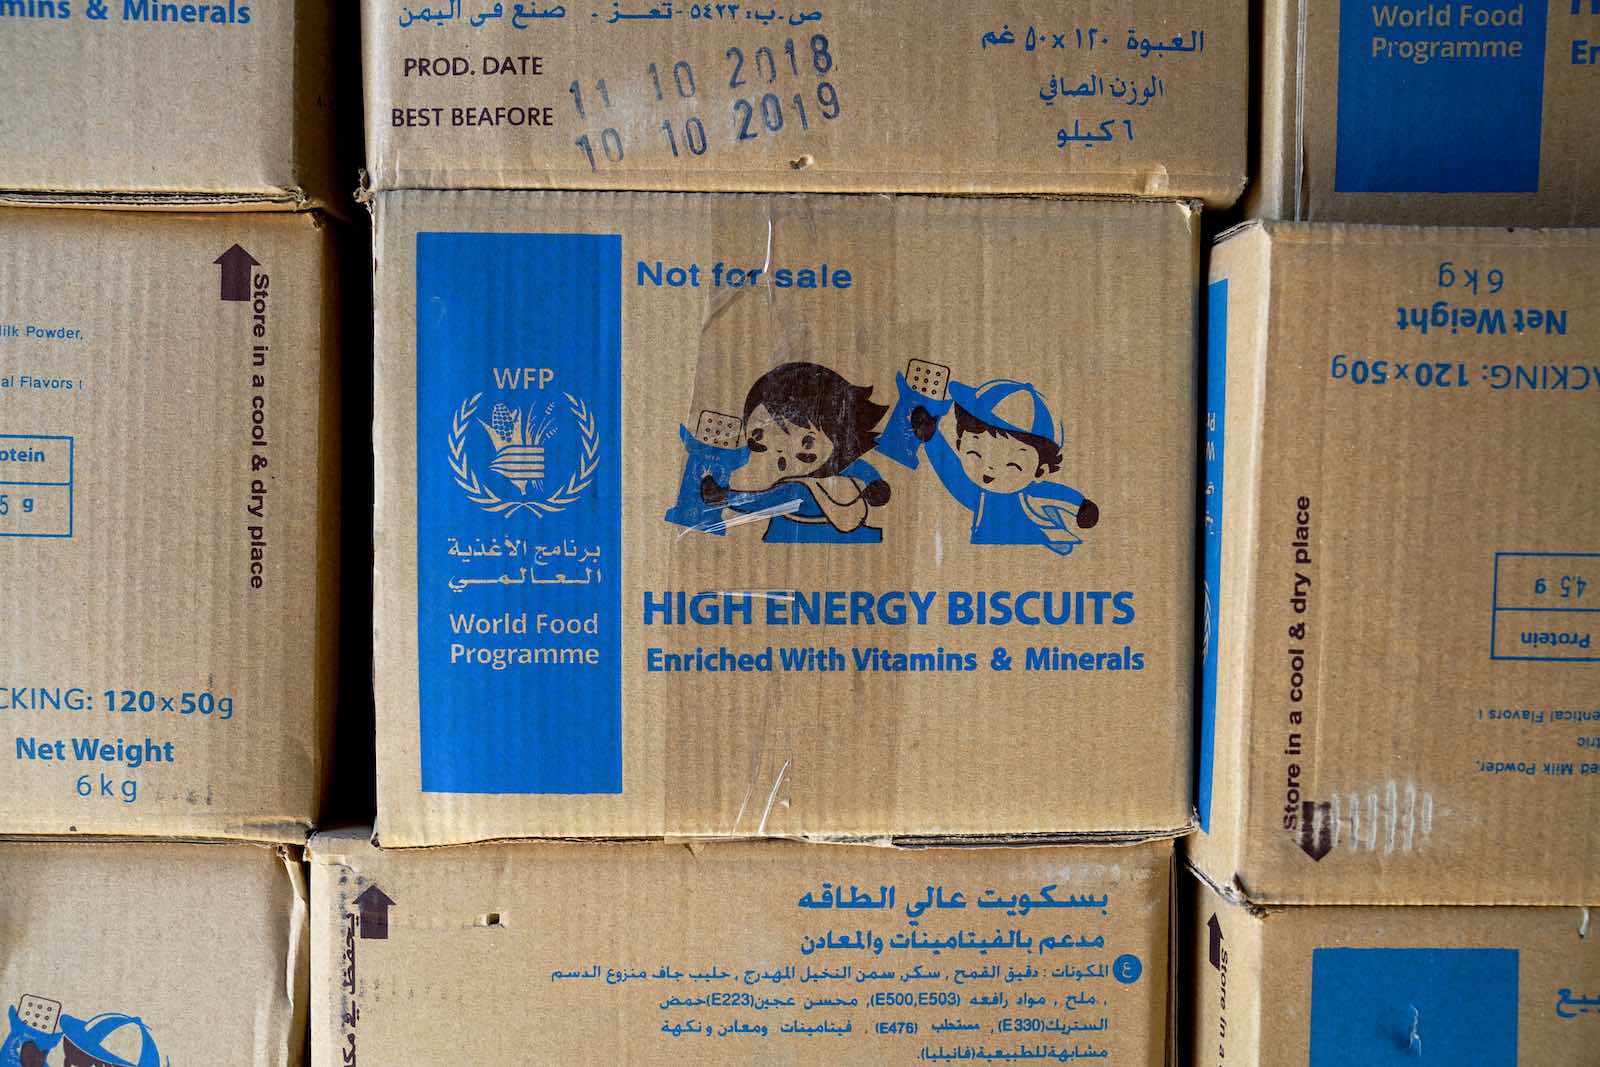 Aden, Yemen, 15 November 2018 (Giles Clarke/UNOCHA via Getty Images)